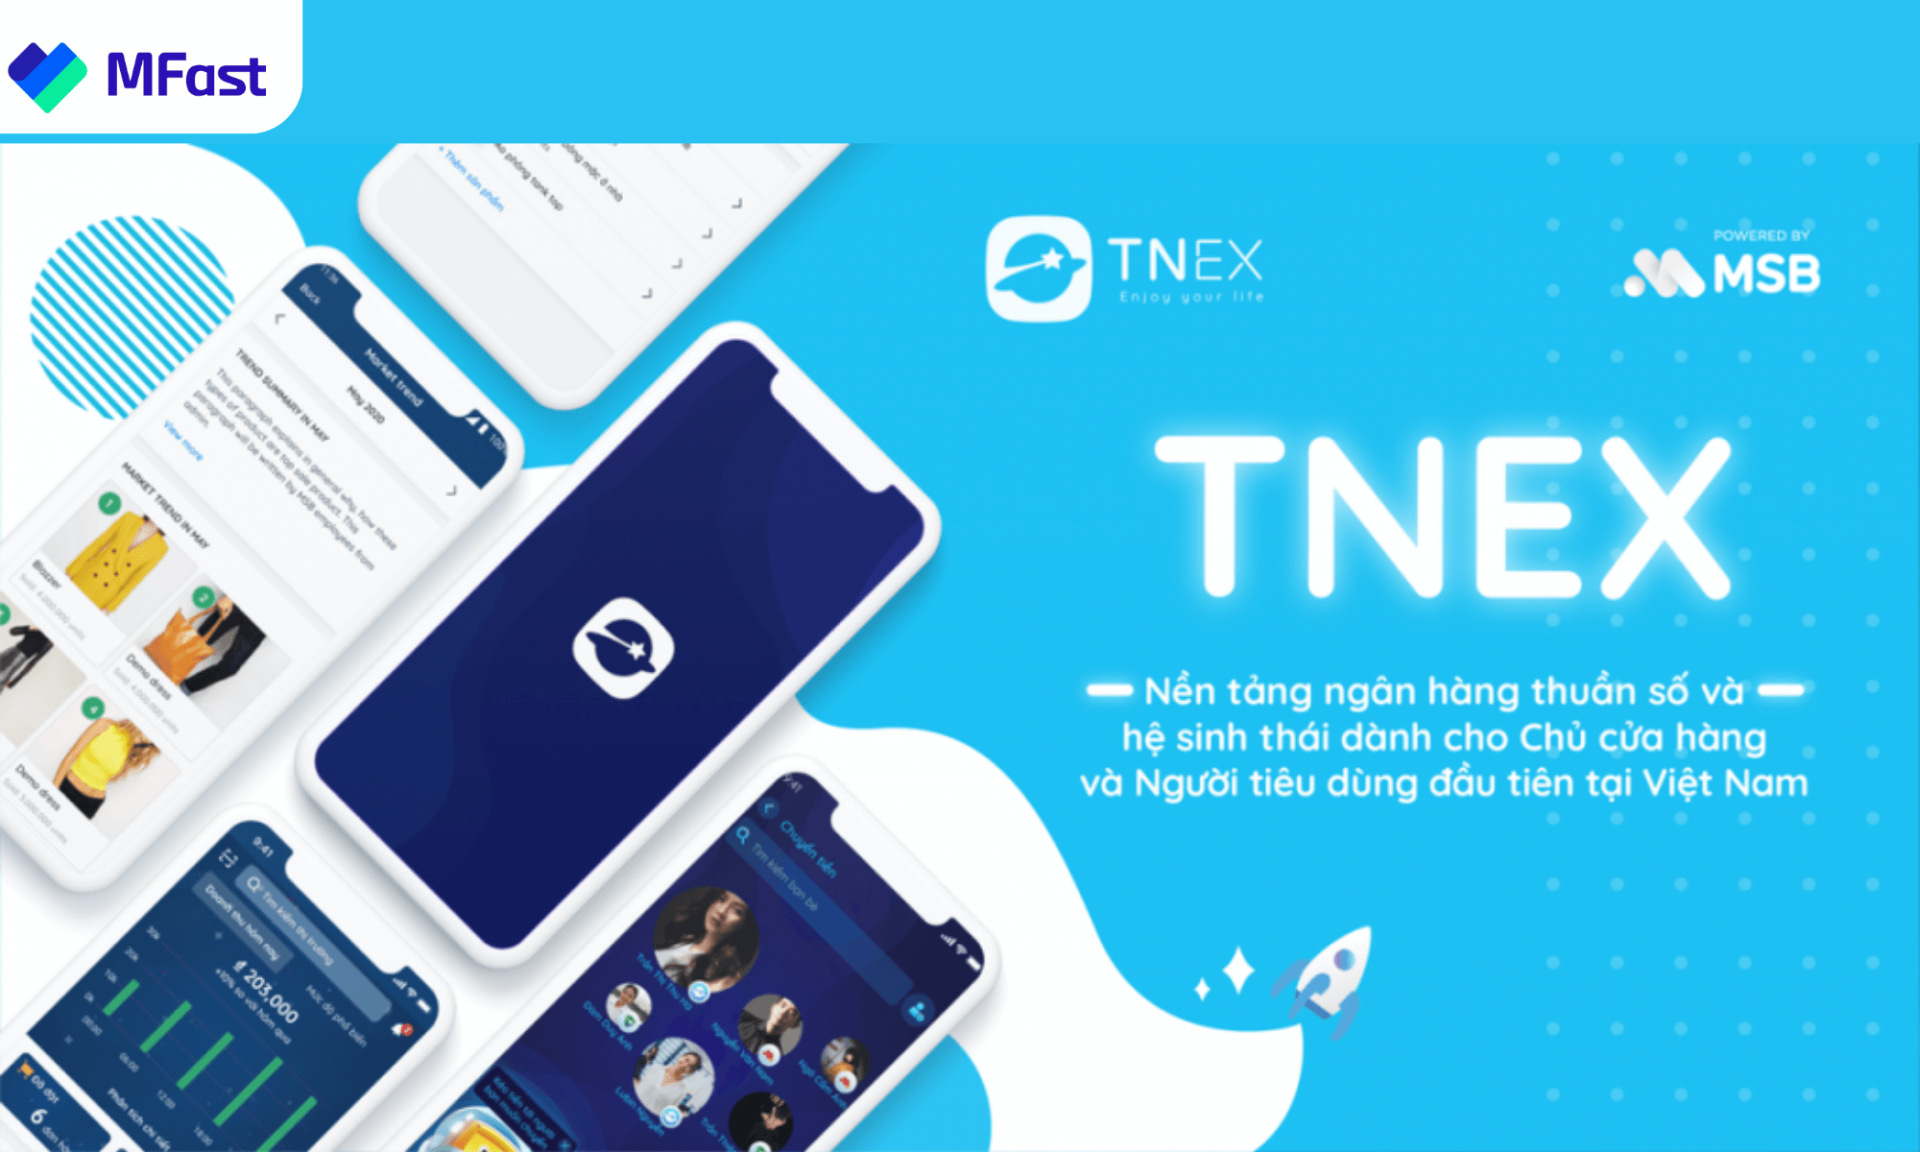 Chiến dịch tiếp thị liên kết của TNEX